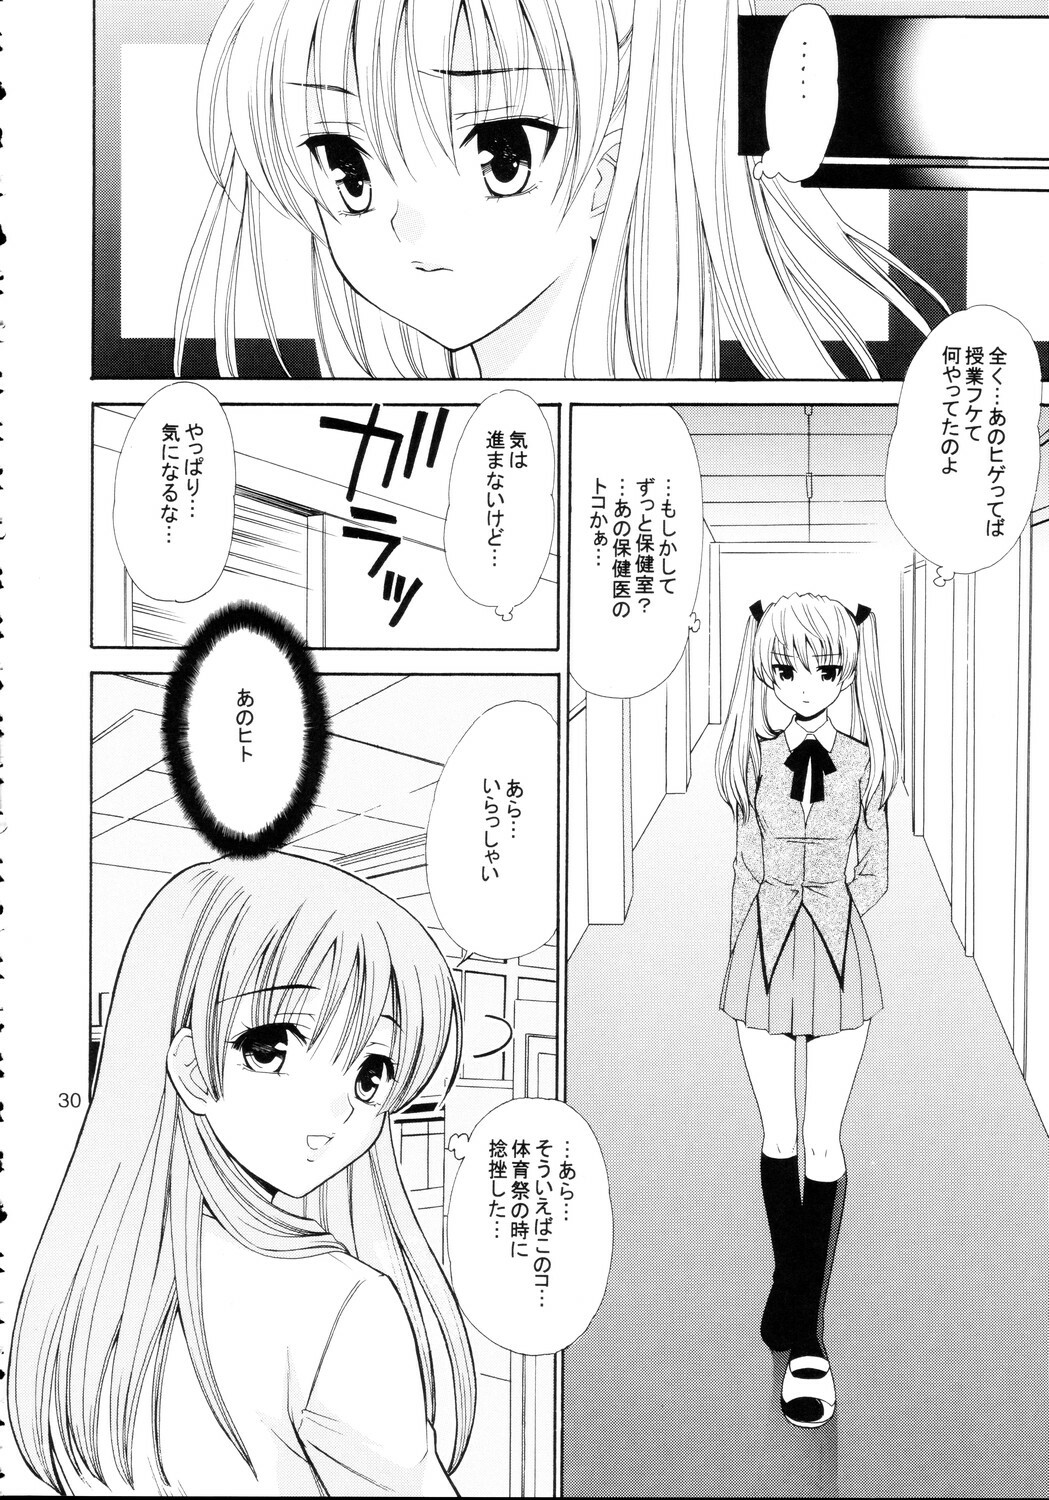 [Teruo Haruo] Hige Seito Harima! 4 (School Rumble) page 30 full